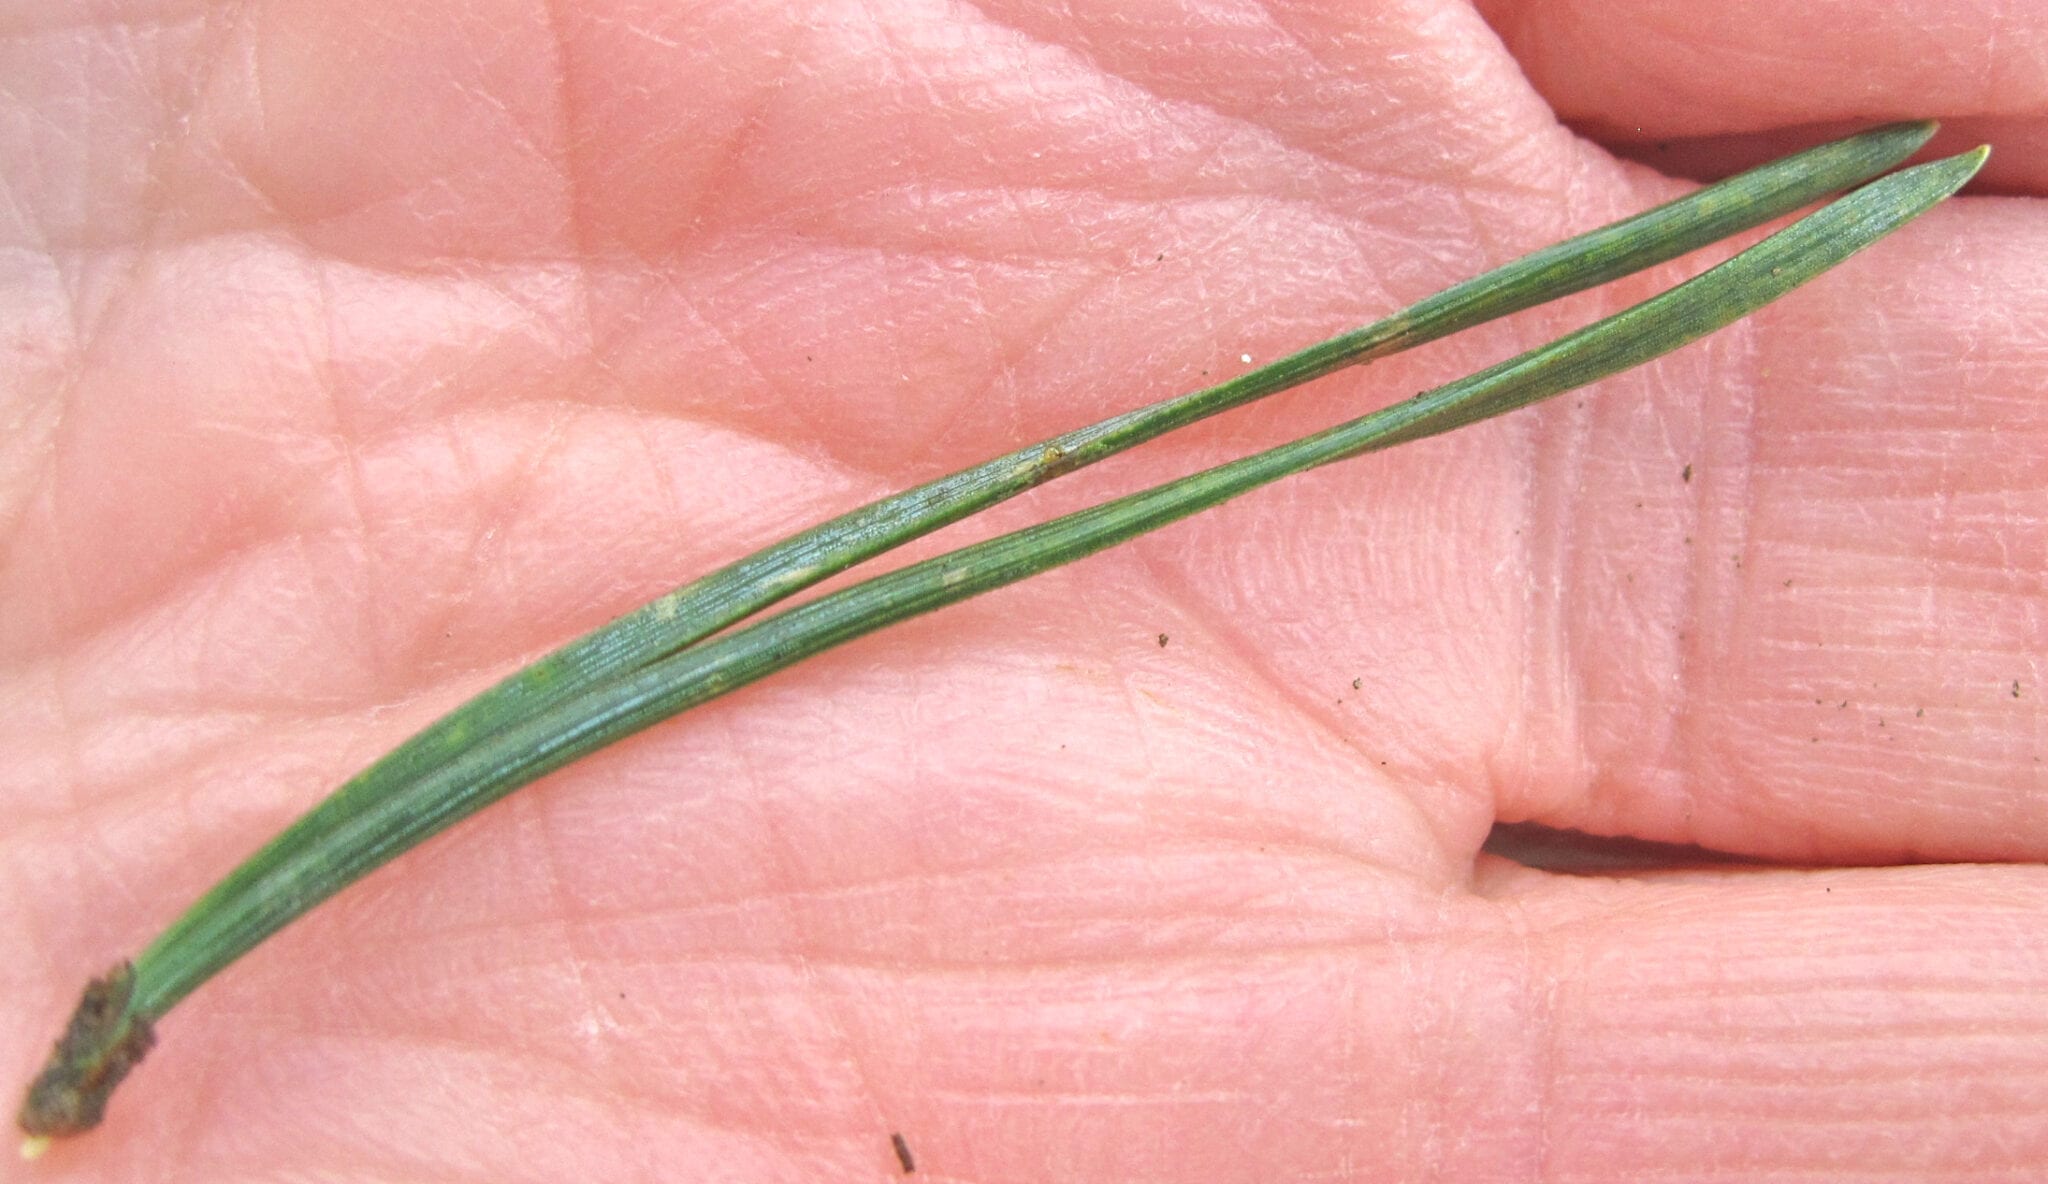 Scots pine needles